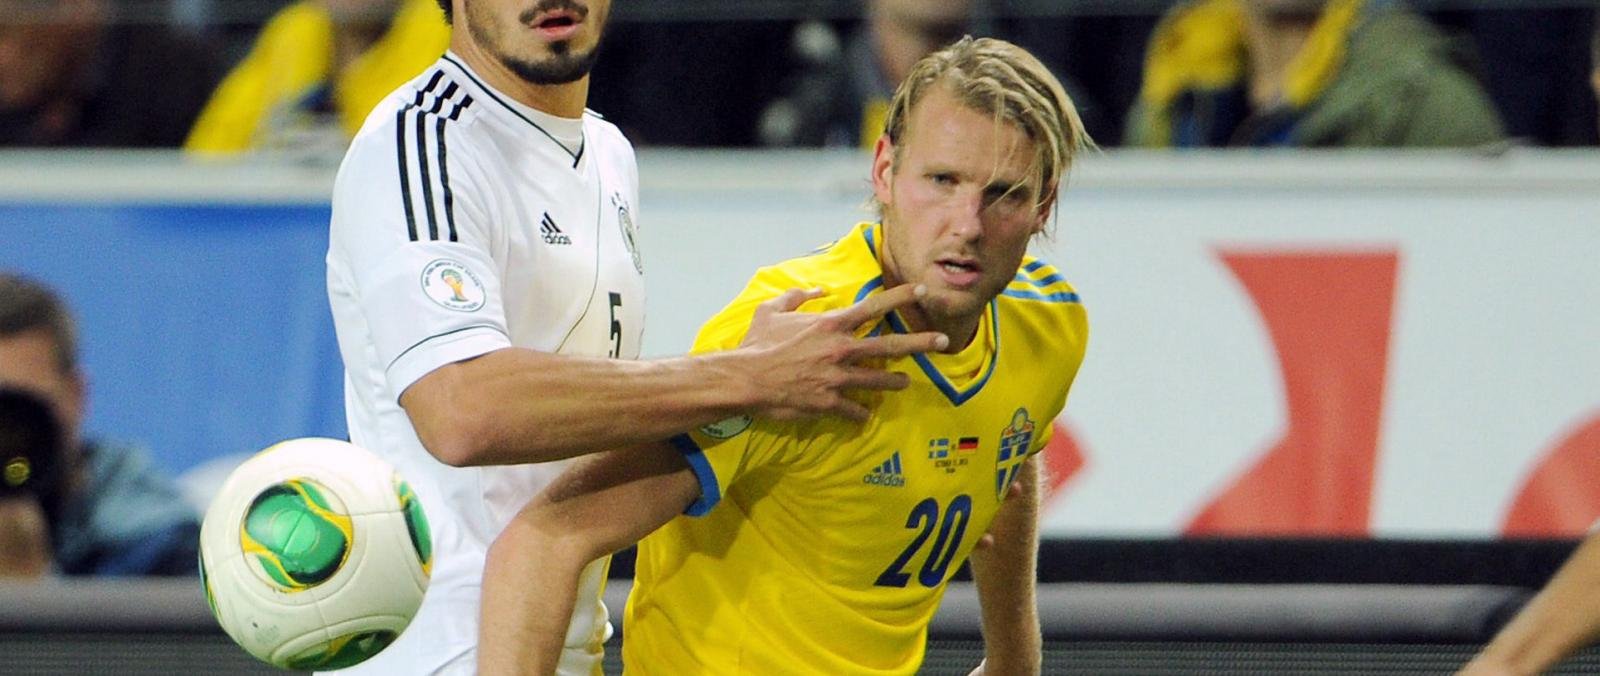 Sunderland close in on Sweden striker